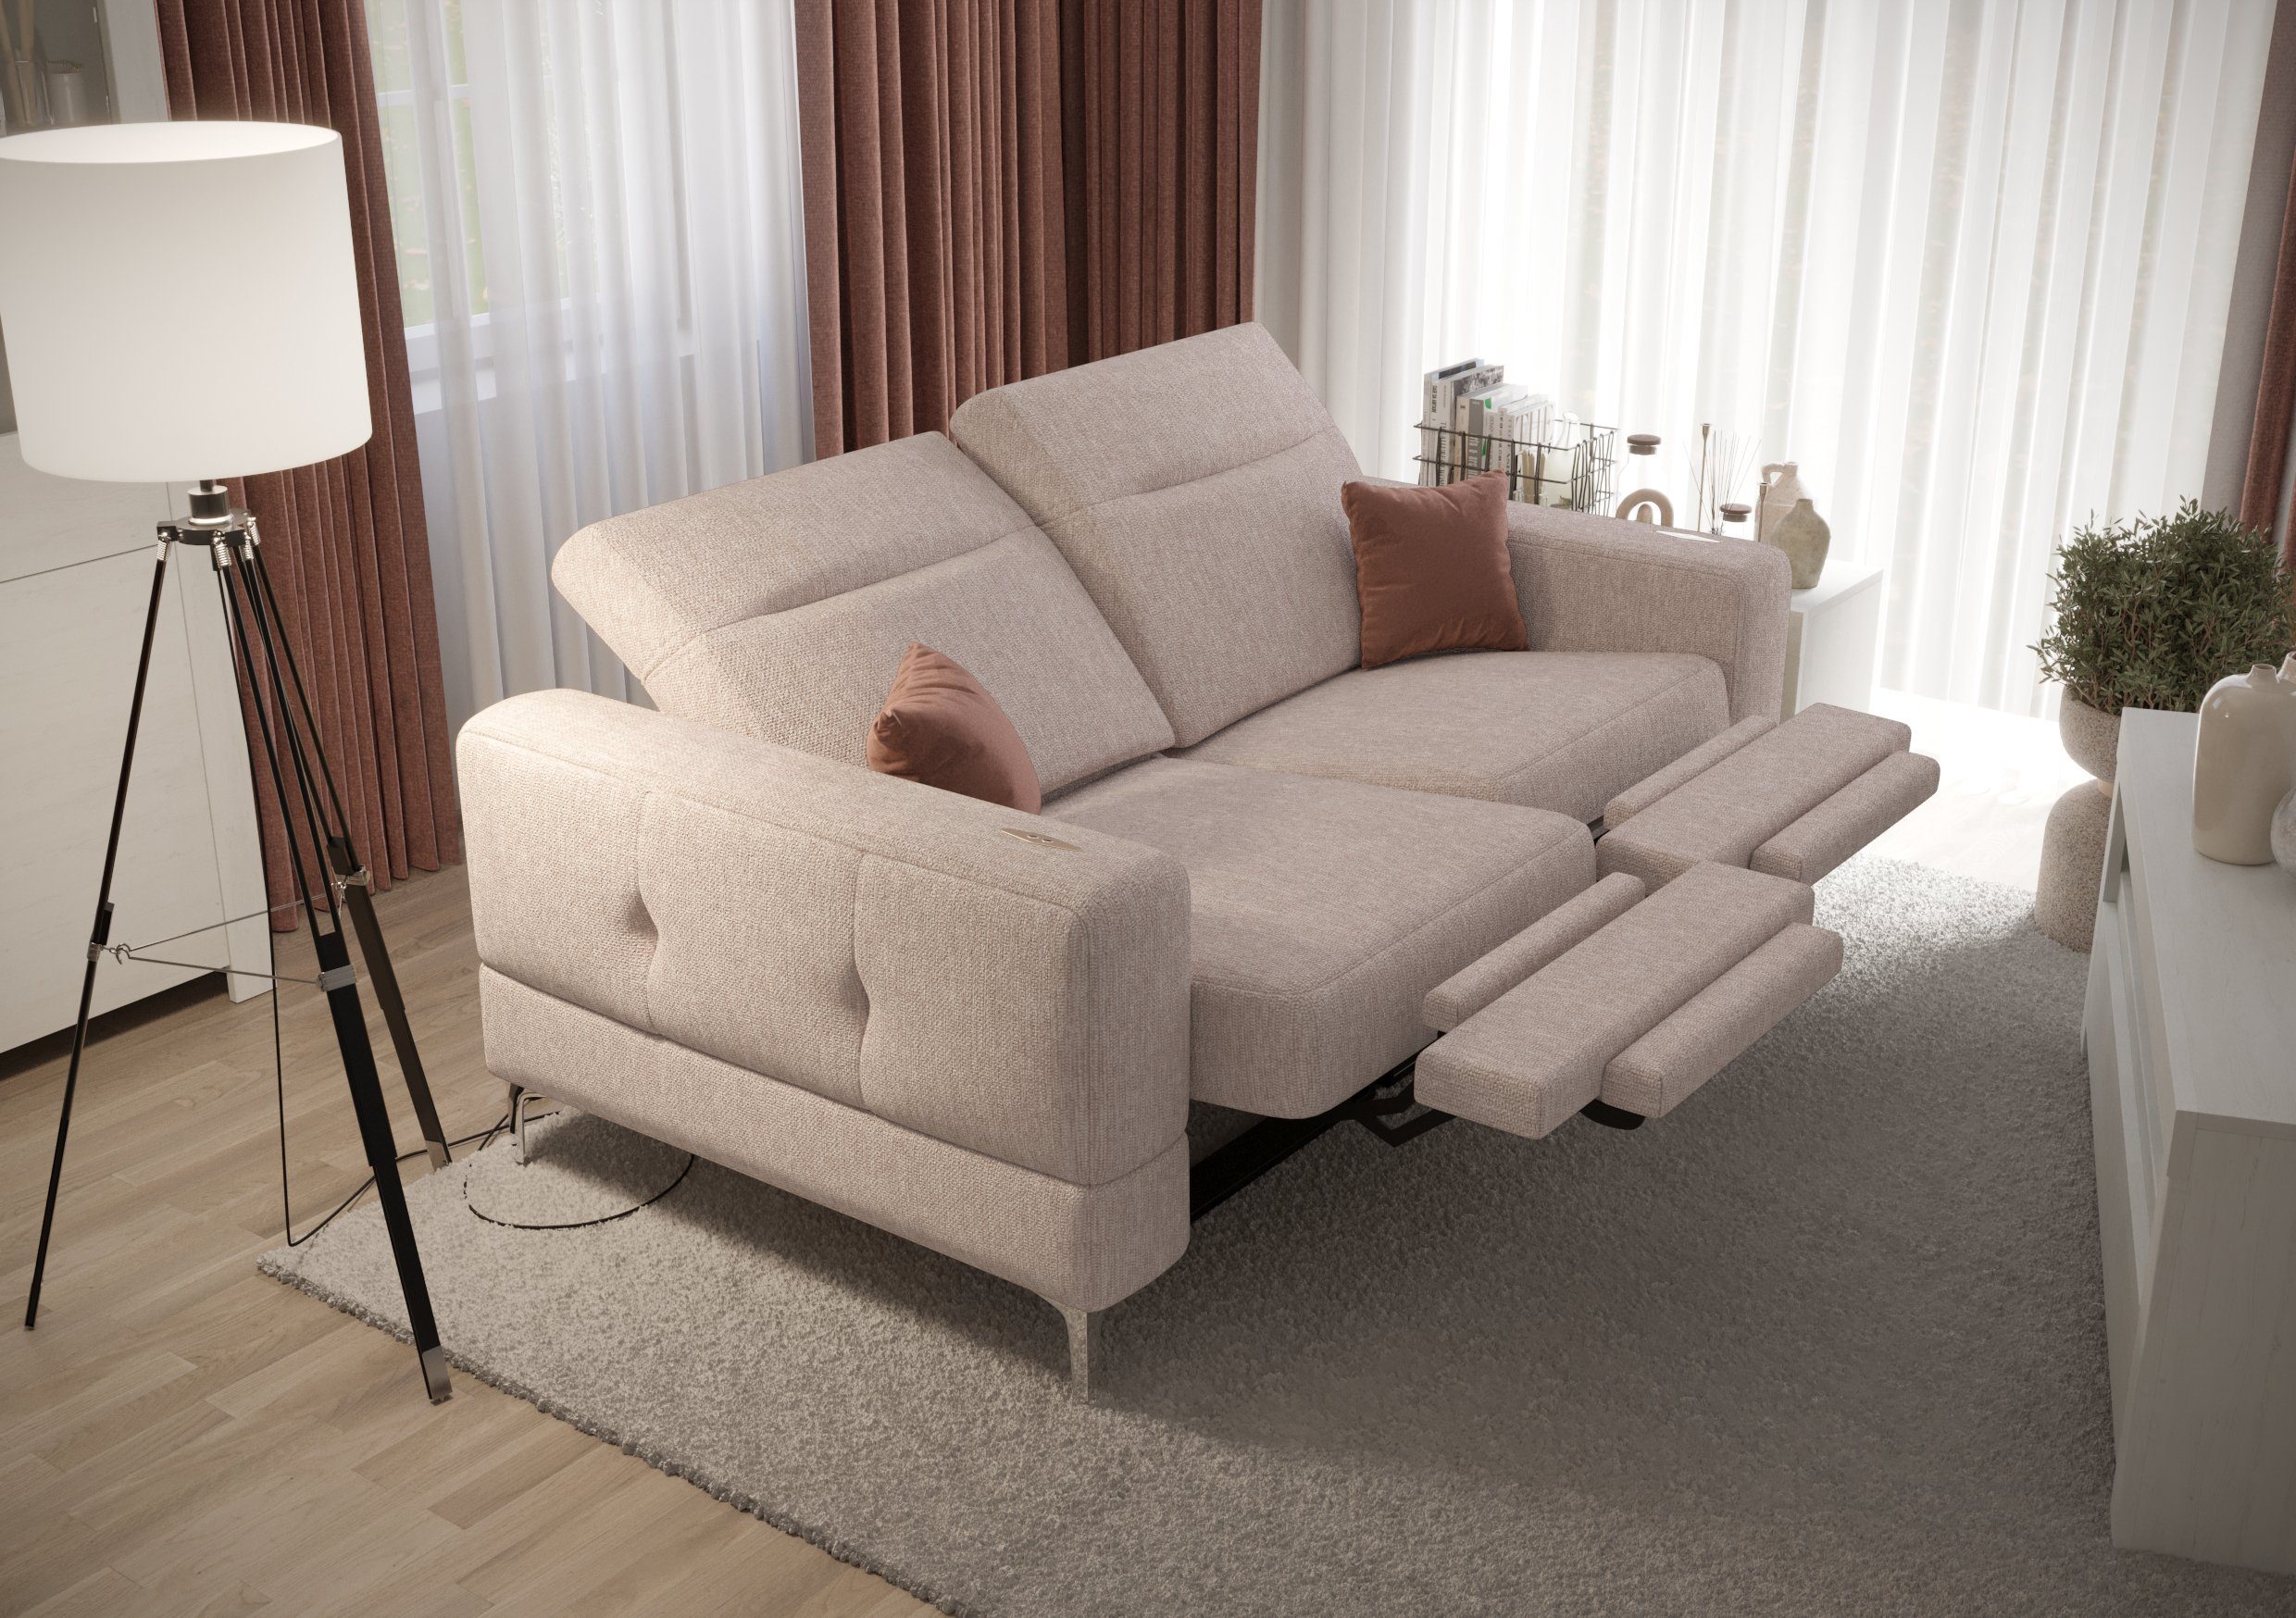 Möbel für mit Dich Webstoff Gemma Farbauswahl Sofa Relax, Relaxfunktion, 2 mit Malibu elektrischer 04 beige Sofa Modernes Stoff-und